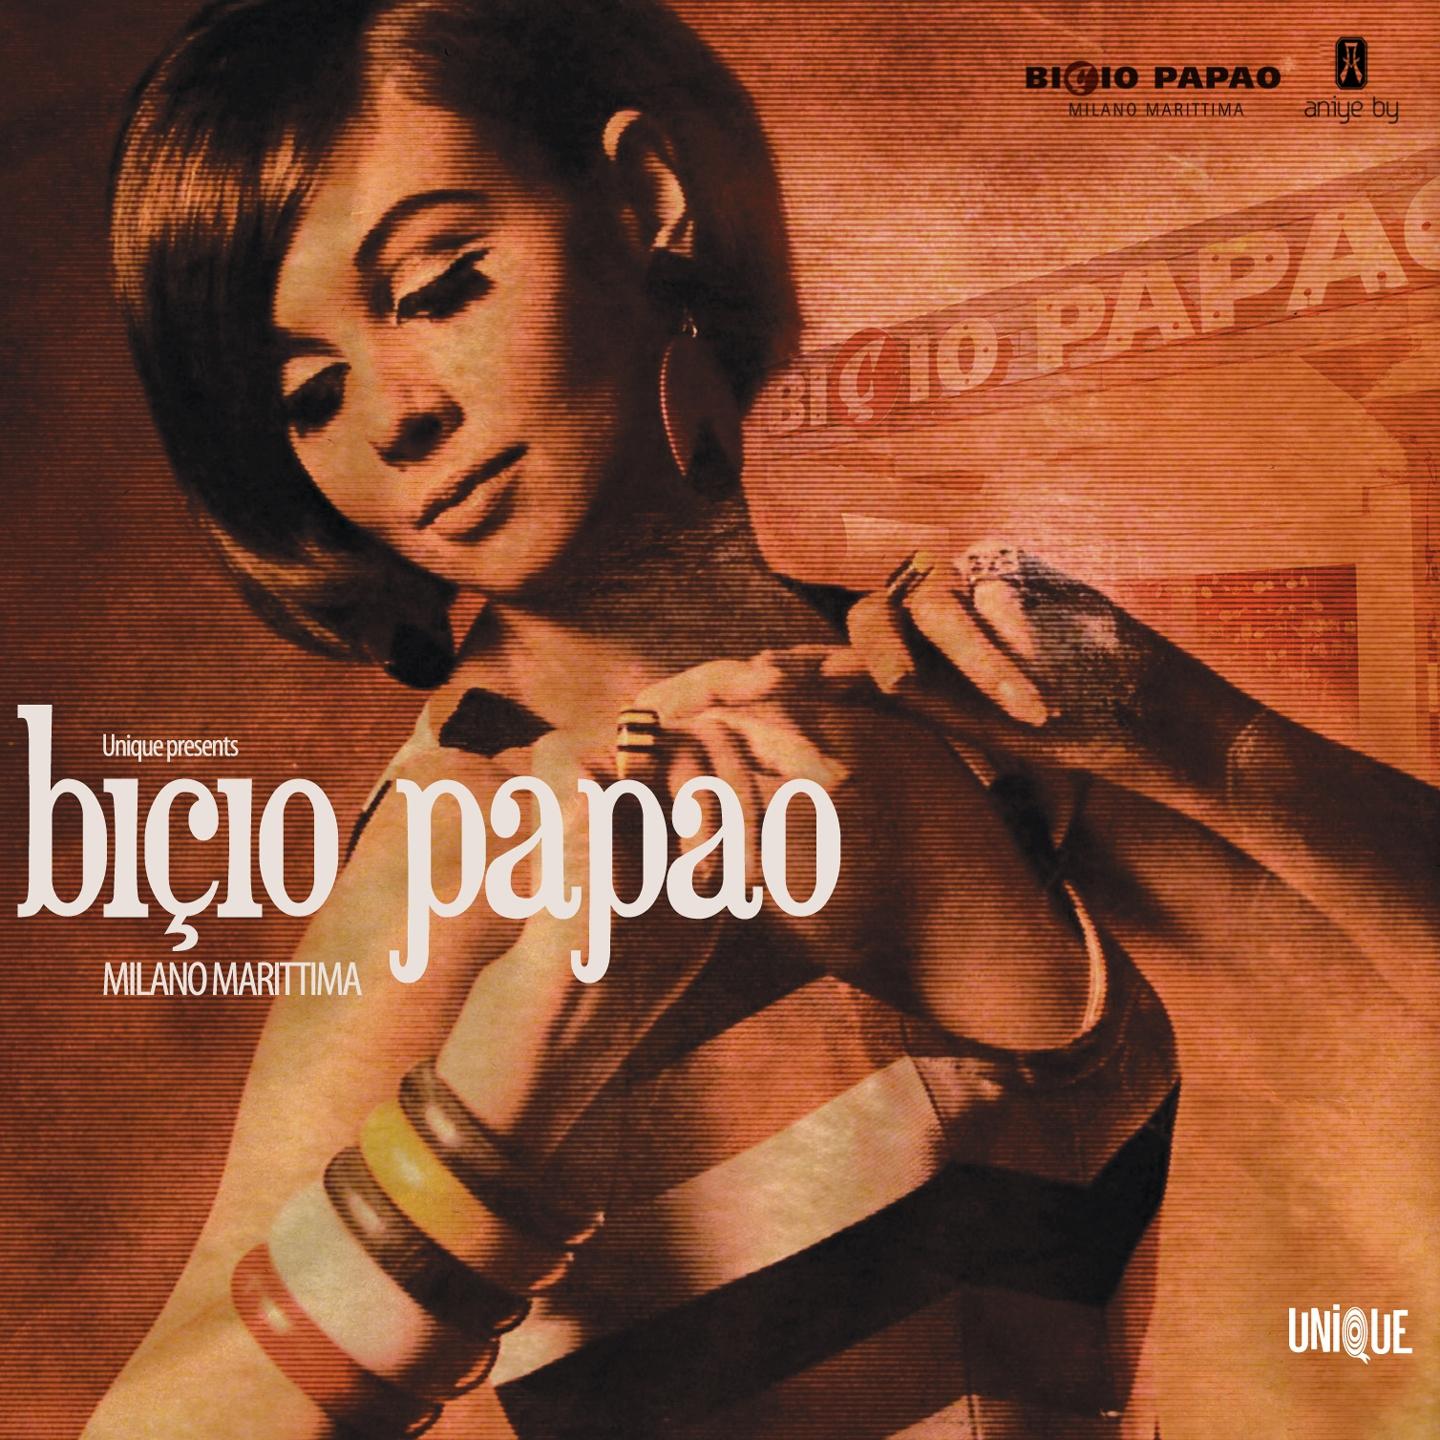 Unique Presents Bicio Papao